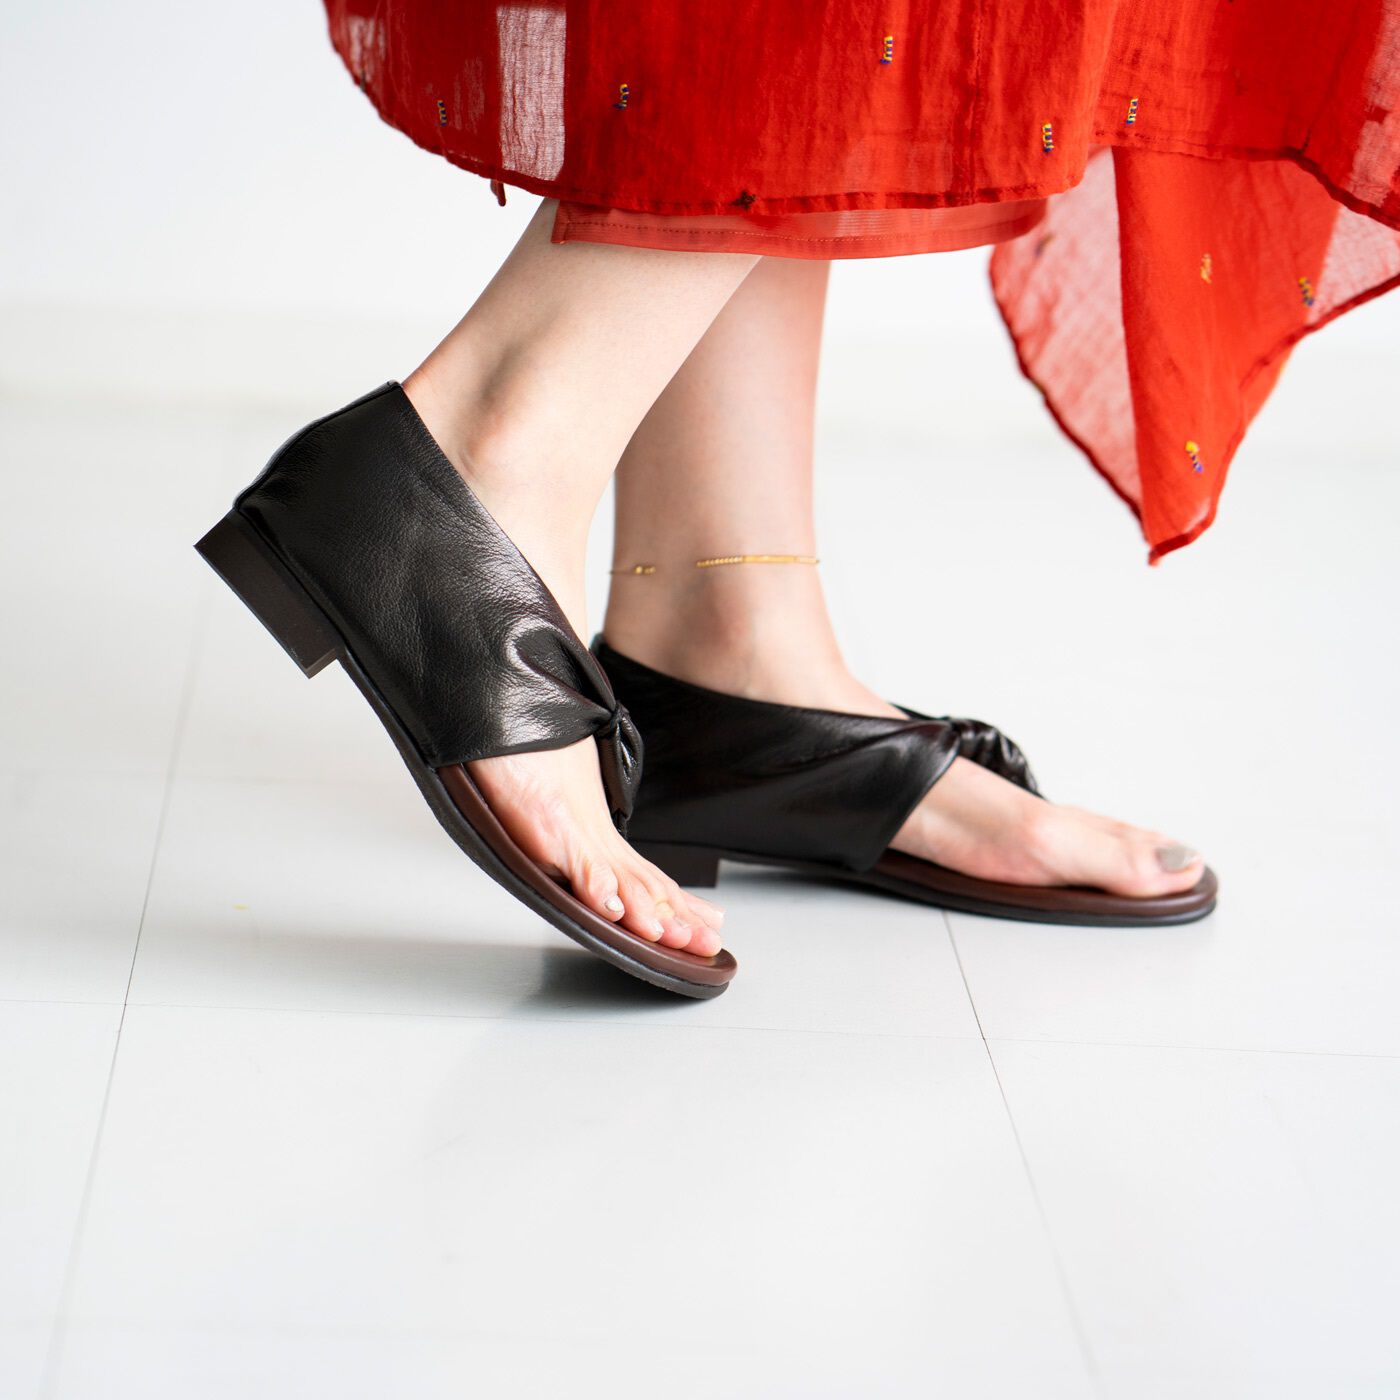 ＆Stories|靴デザイナーの理想で作った　職人本革のスクイーズトング〈ブラック〉|素足でペディキュアとのコーディネートを楽しむのはもちろん、5本指や足袋ソックスと合わせてシーズンレスに履きこなしても素敵です。